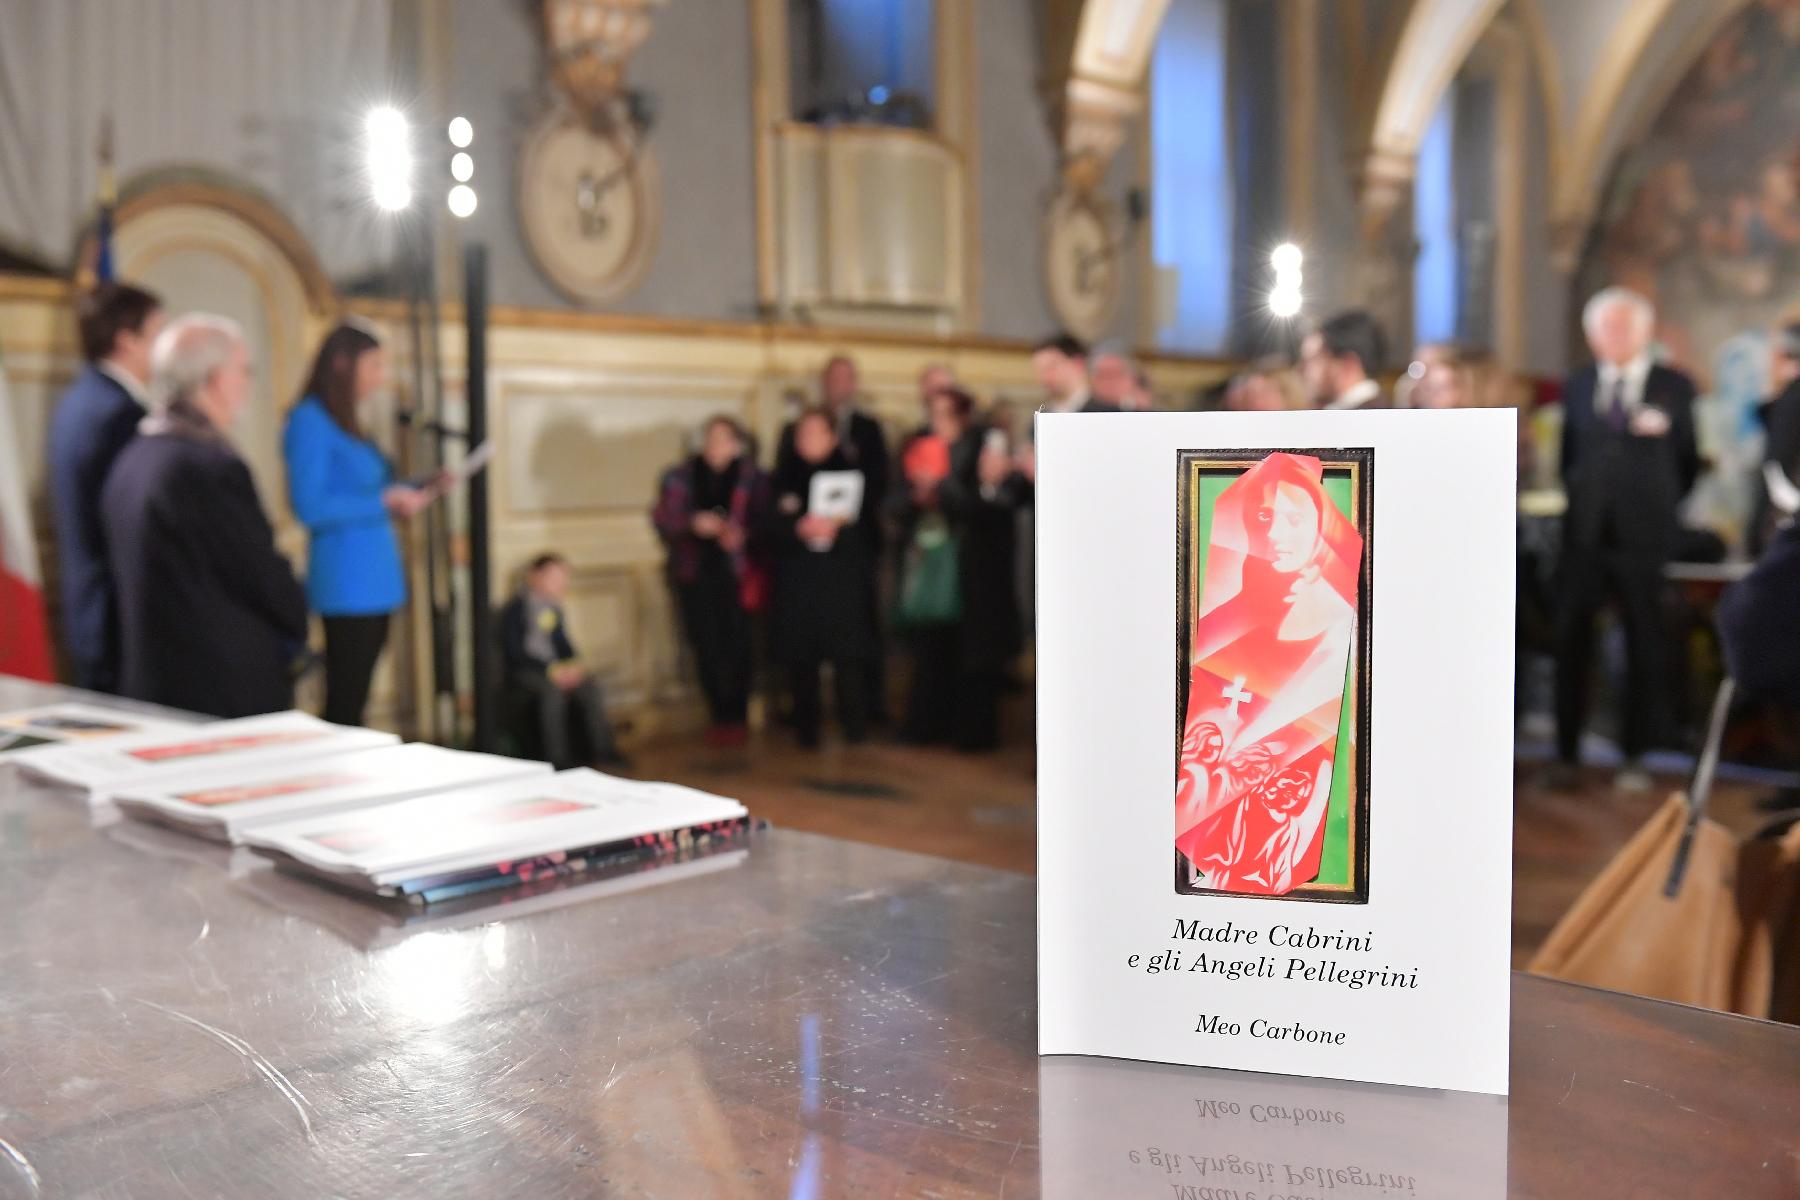 La vicepresidente della Camera dei deputati, Anna Ascani inaugura la mostra "Madre Cabrini e gli angeli pellegrini"